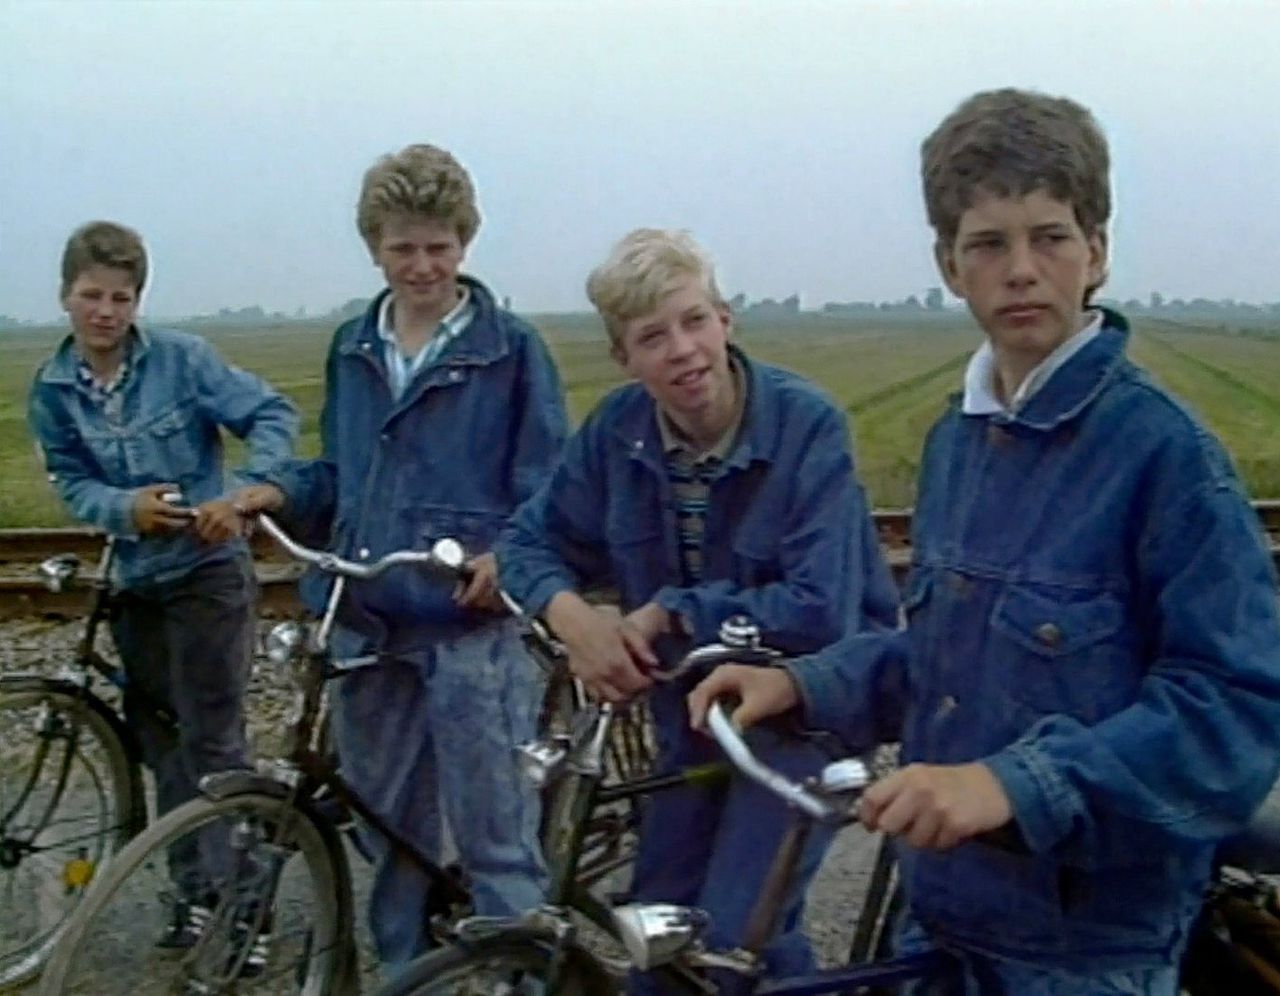 Vier Friese schooljongens fietsen elke dag clandestien langs de spoorlijn naar school, omdat het vier kilometer korter is.